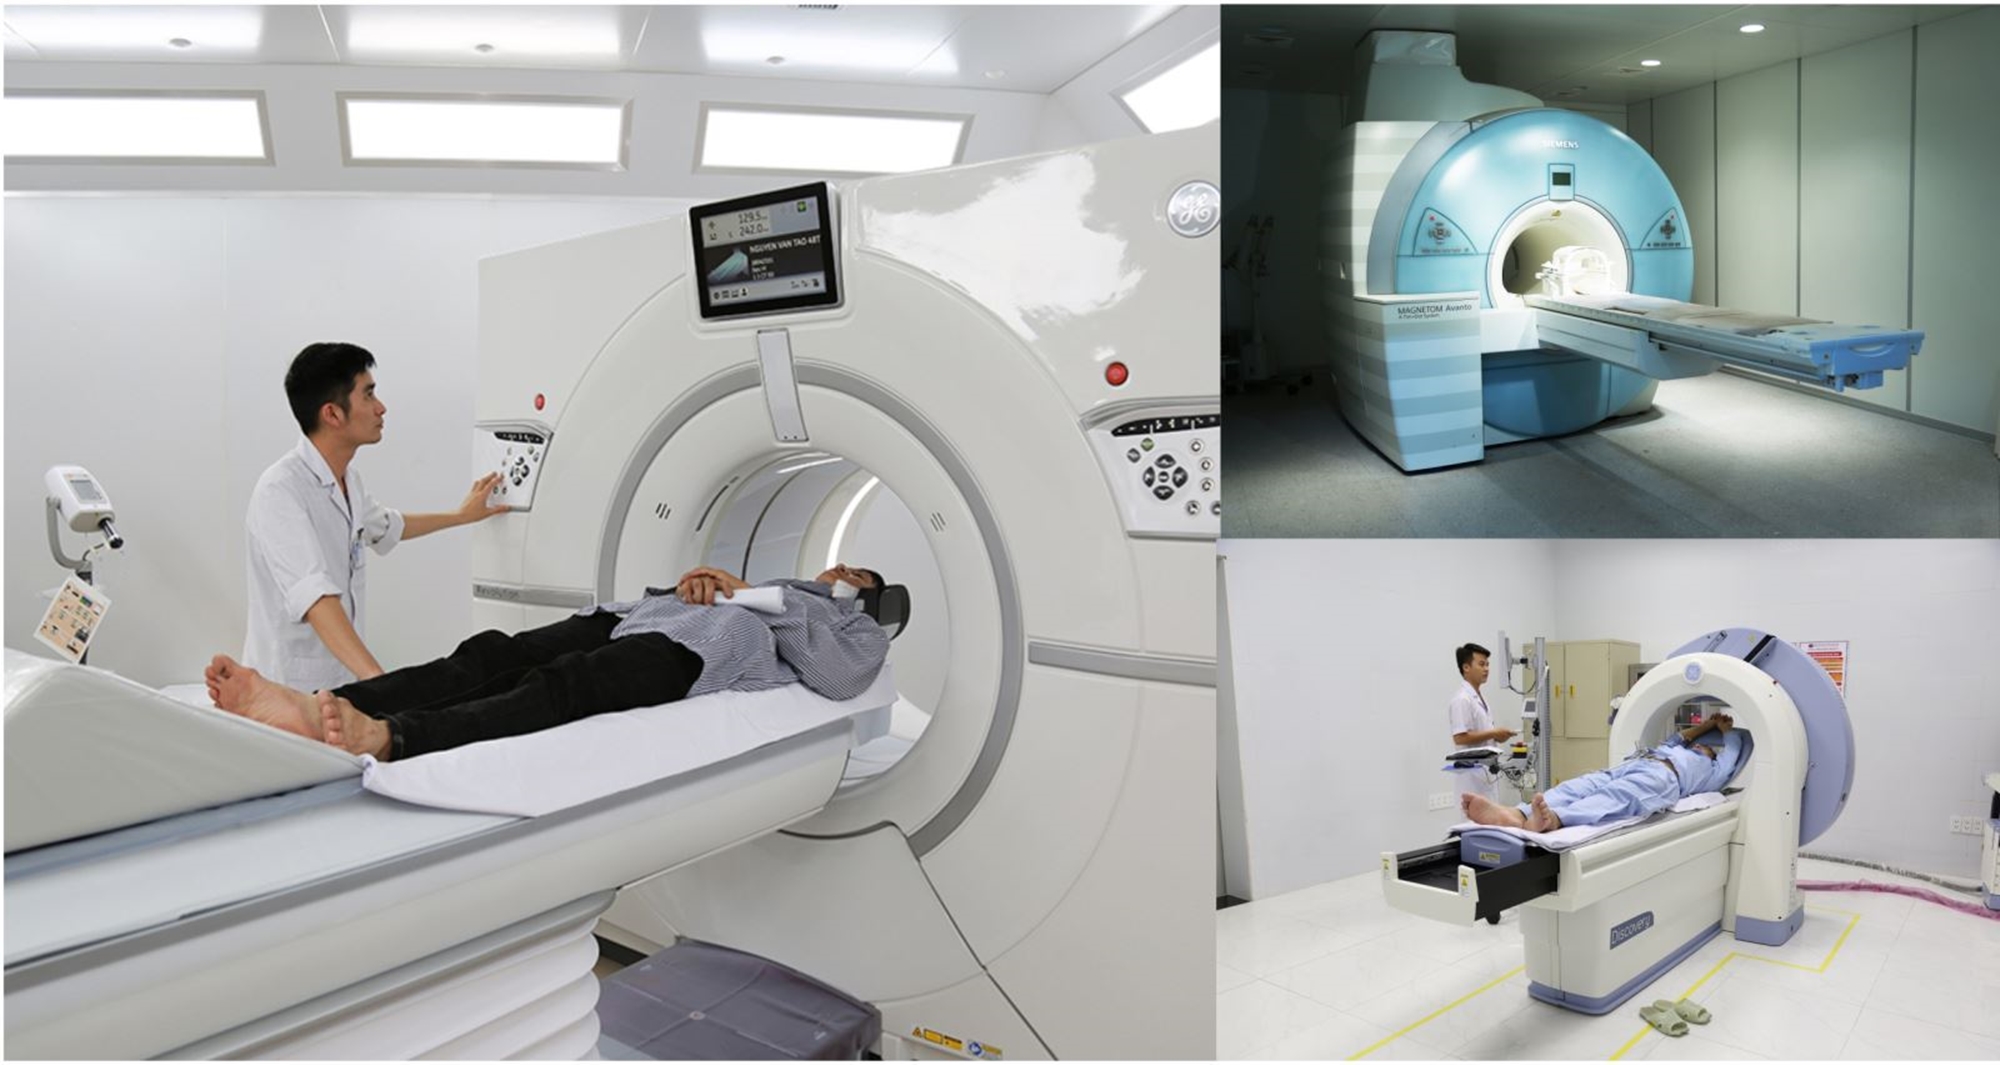 Máy móc hiện đại được trang bị tại khoa Chẩn đoán hình ảnh, Bệnh viện Đa khoa tỉnh.